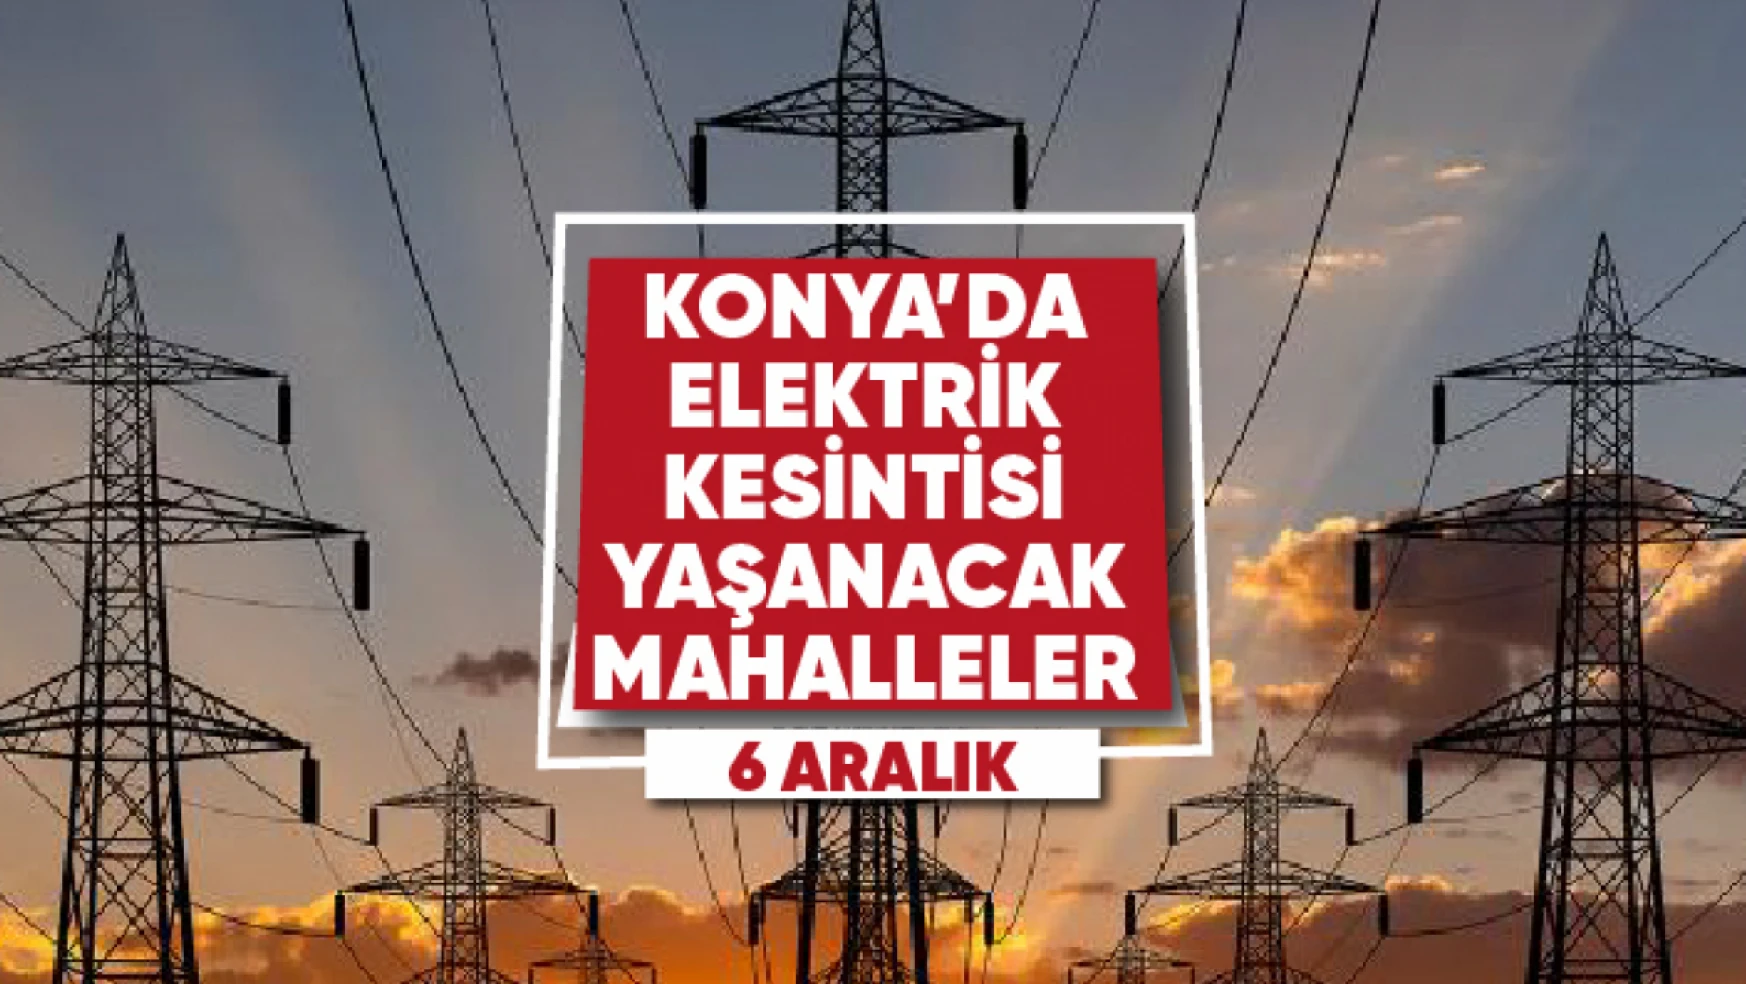 Konya'da elektrik kesintisi yaşanacak mahalle ve sokaklar (6 Aralık)